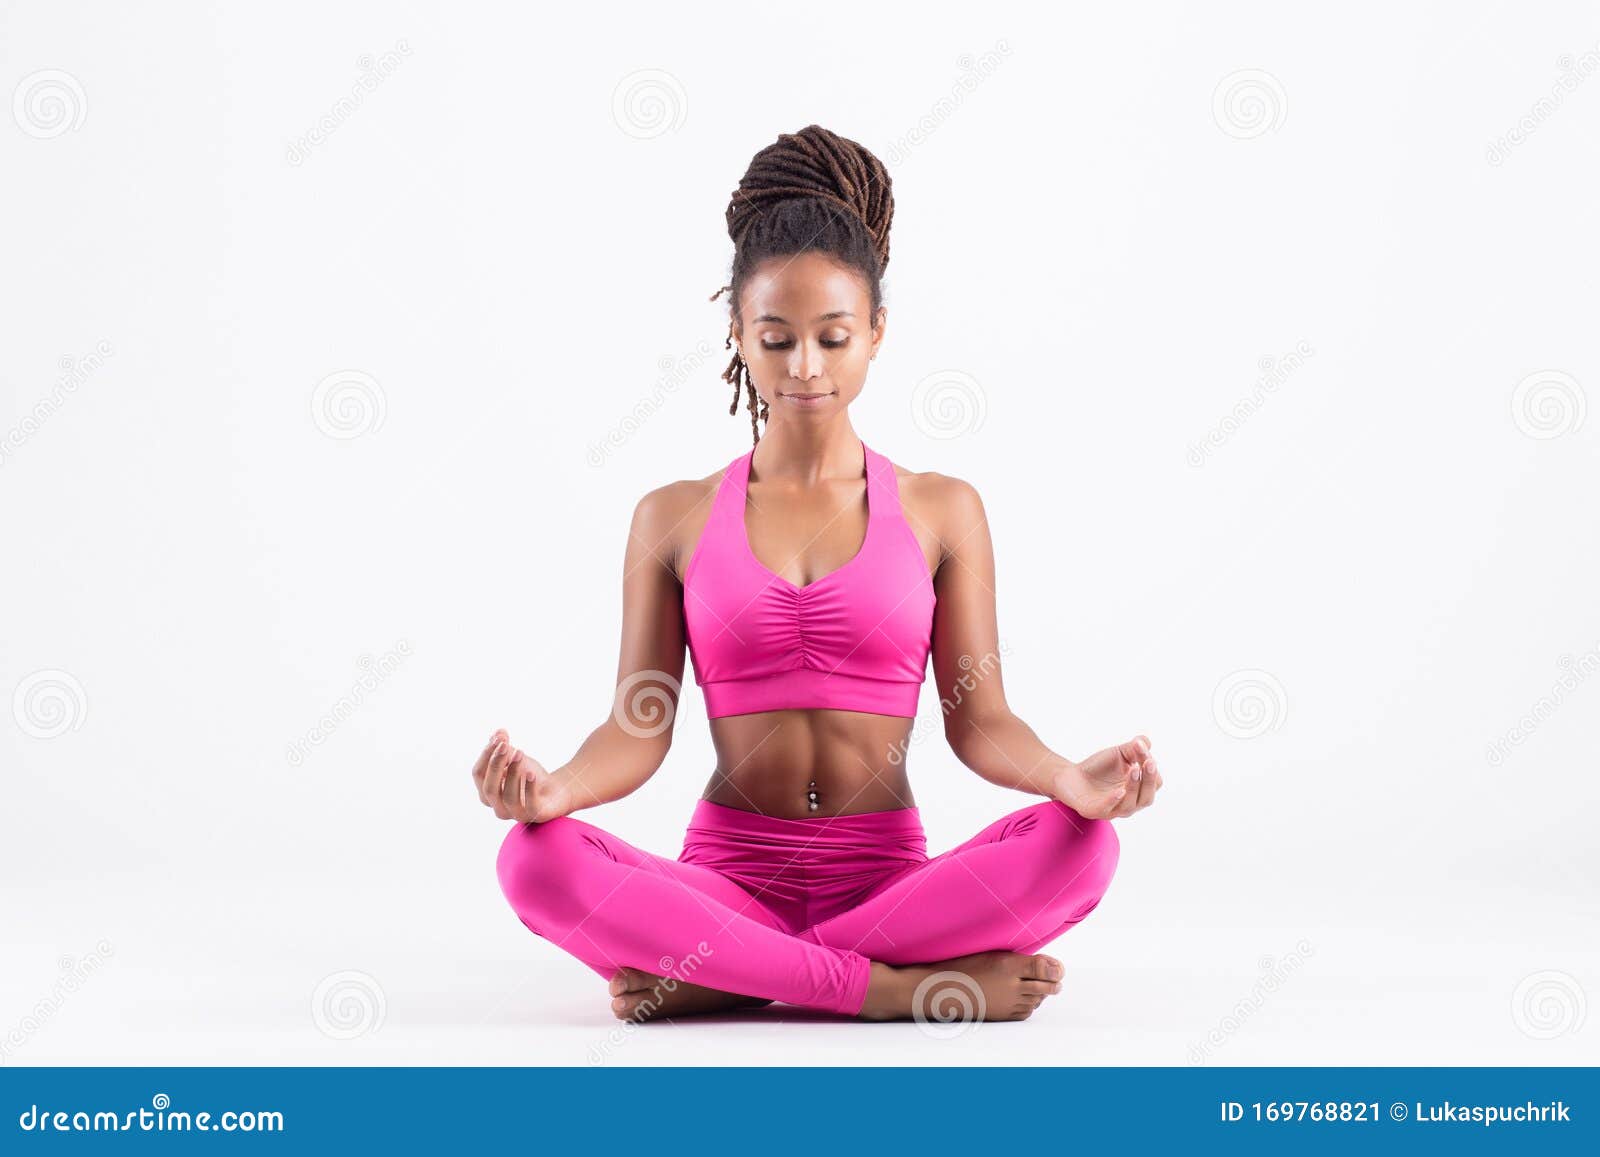 Black Girl In Yoga Pants Pic Telegraph